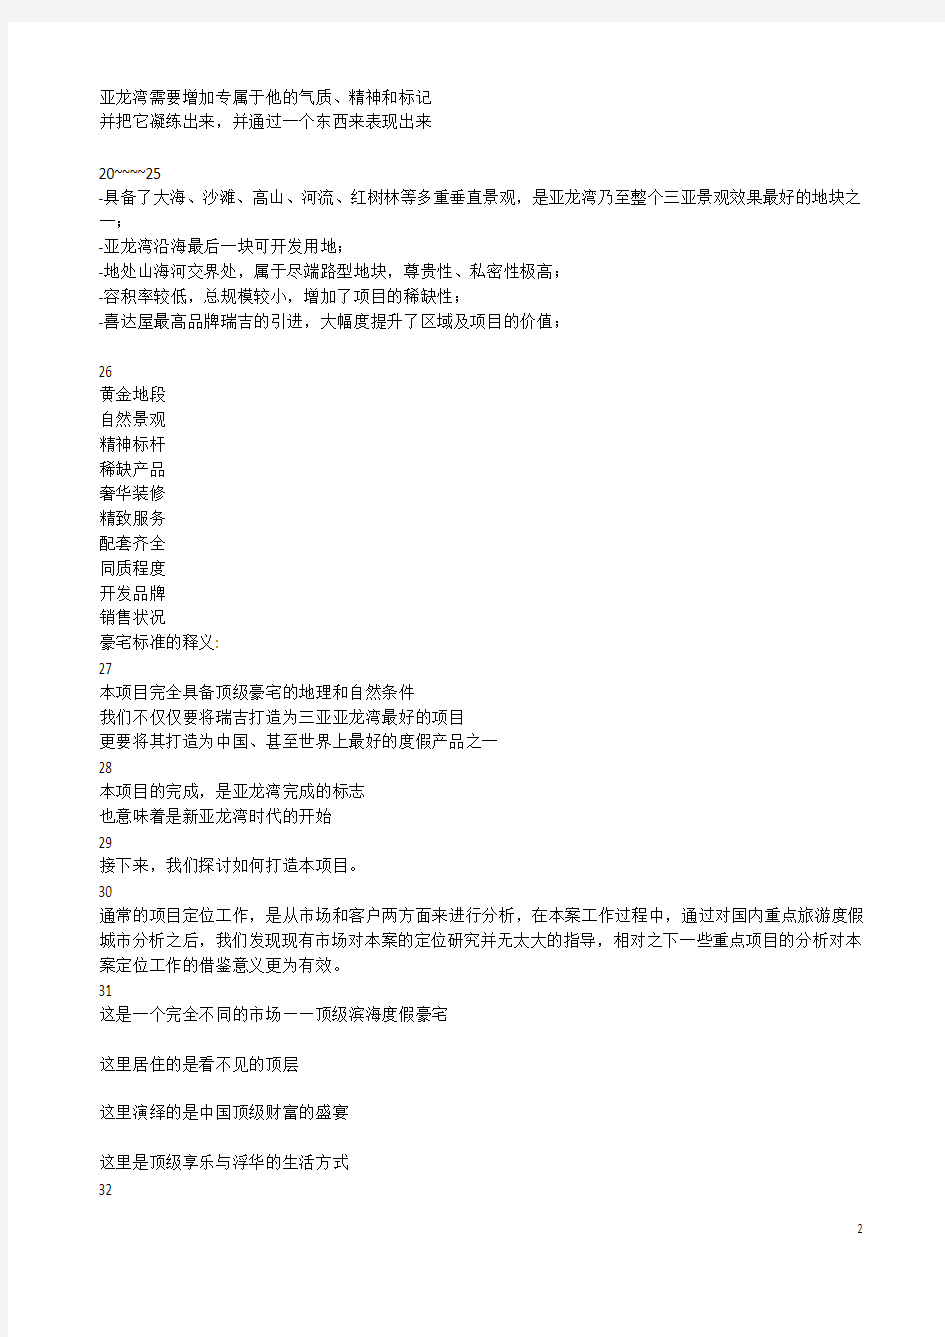 2011年三亚亚龙湾瑞吉酒店别墅项目产品定位报告(文本)